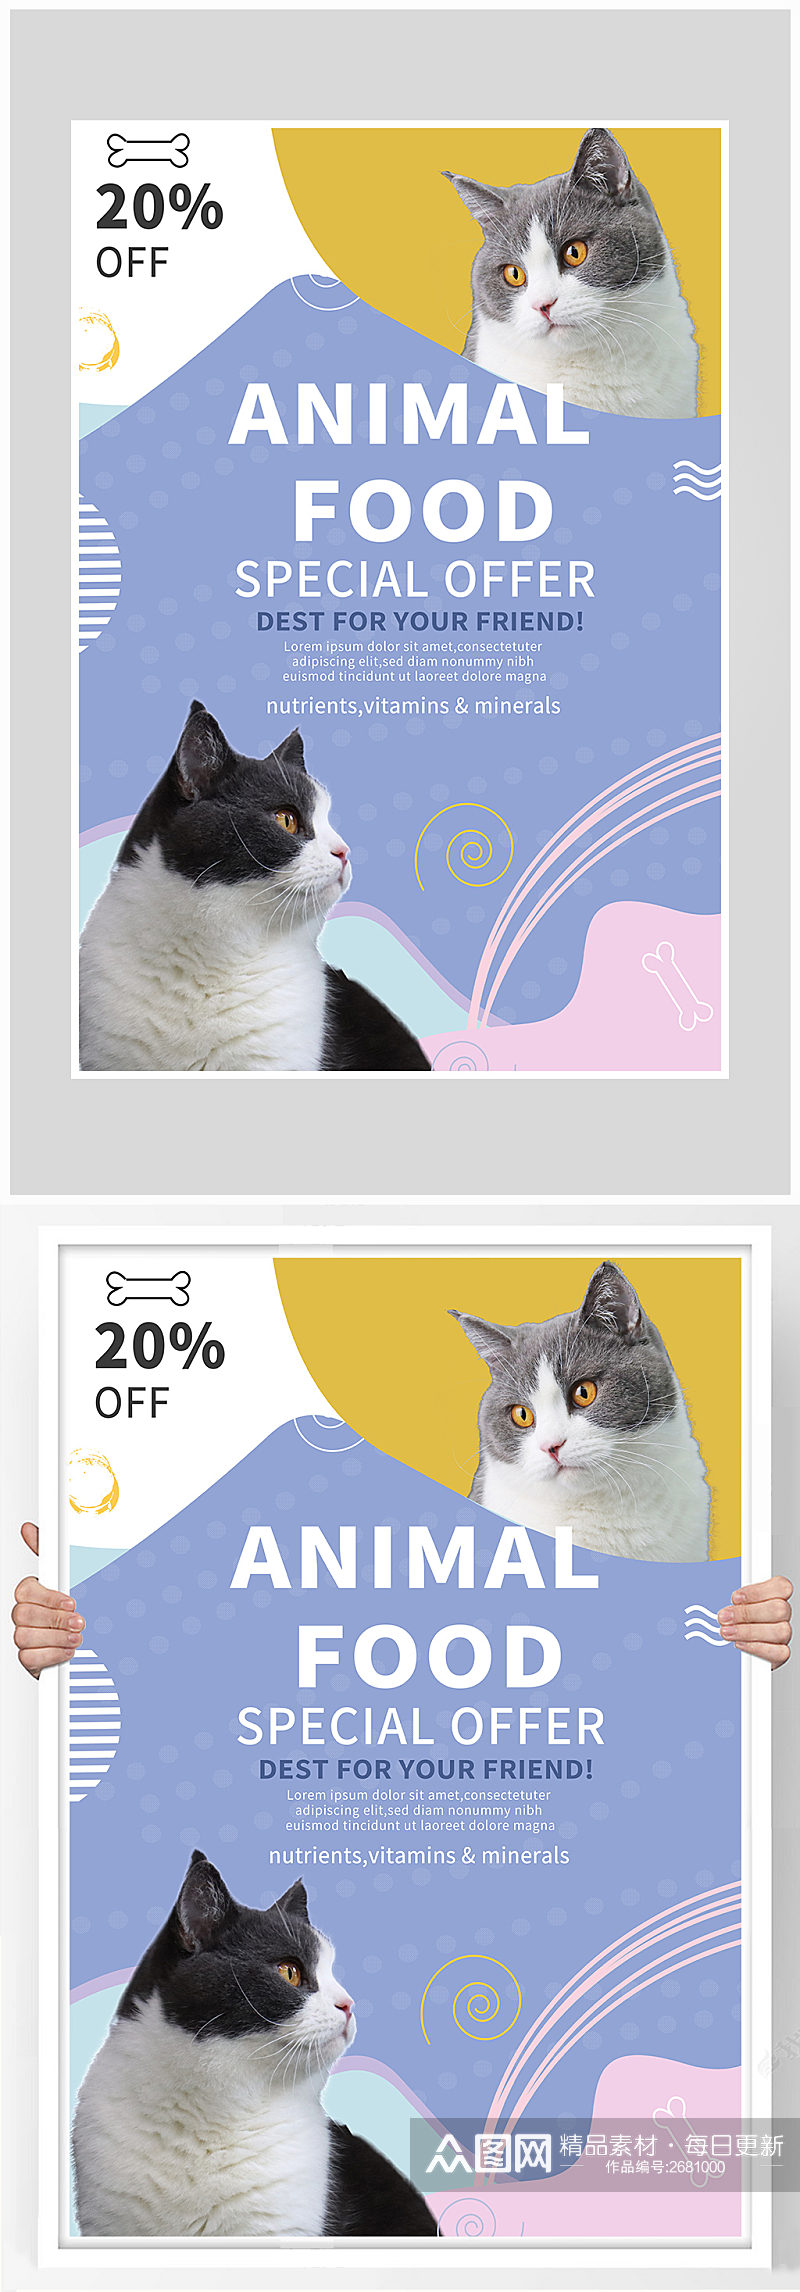 简约宠物店小猫海报设计素材